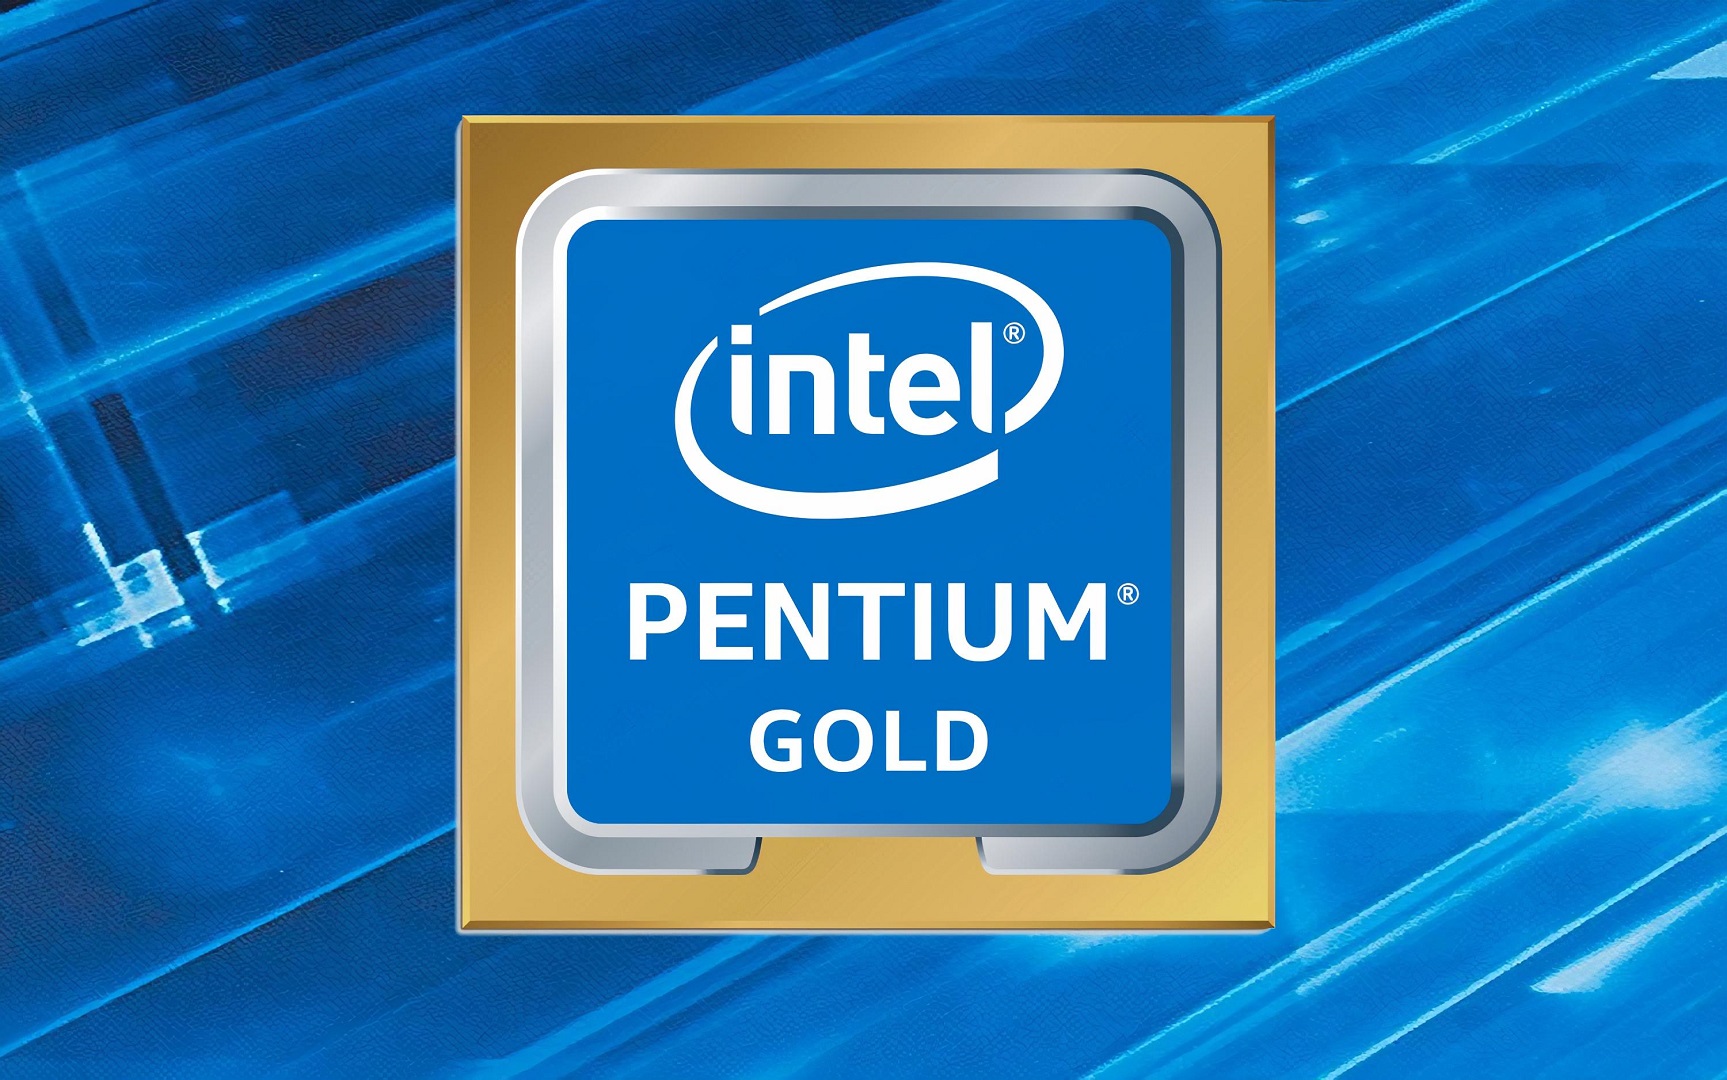 Intel Pentium Gold Logo